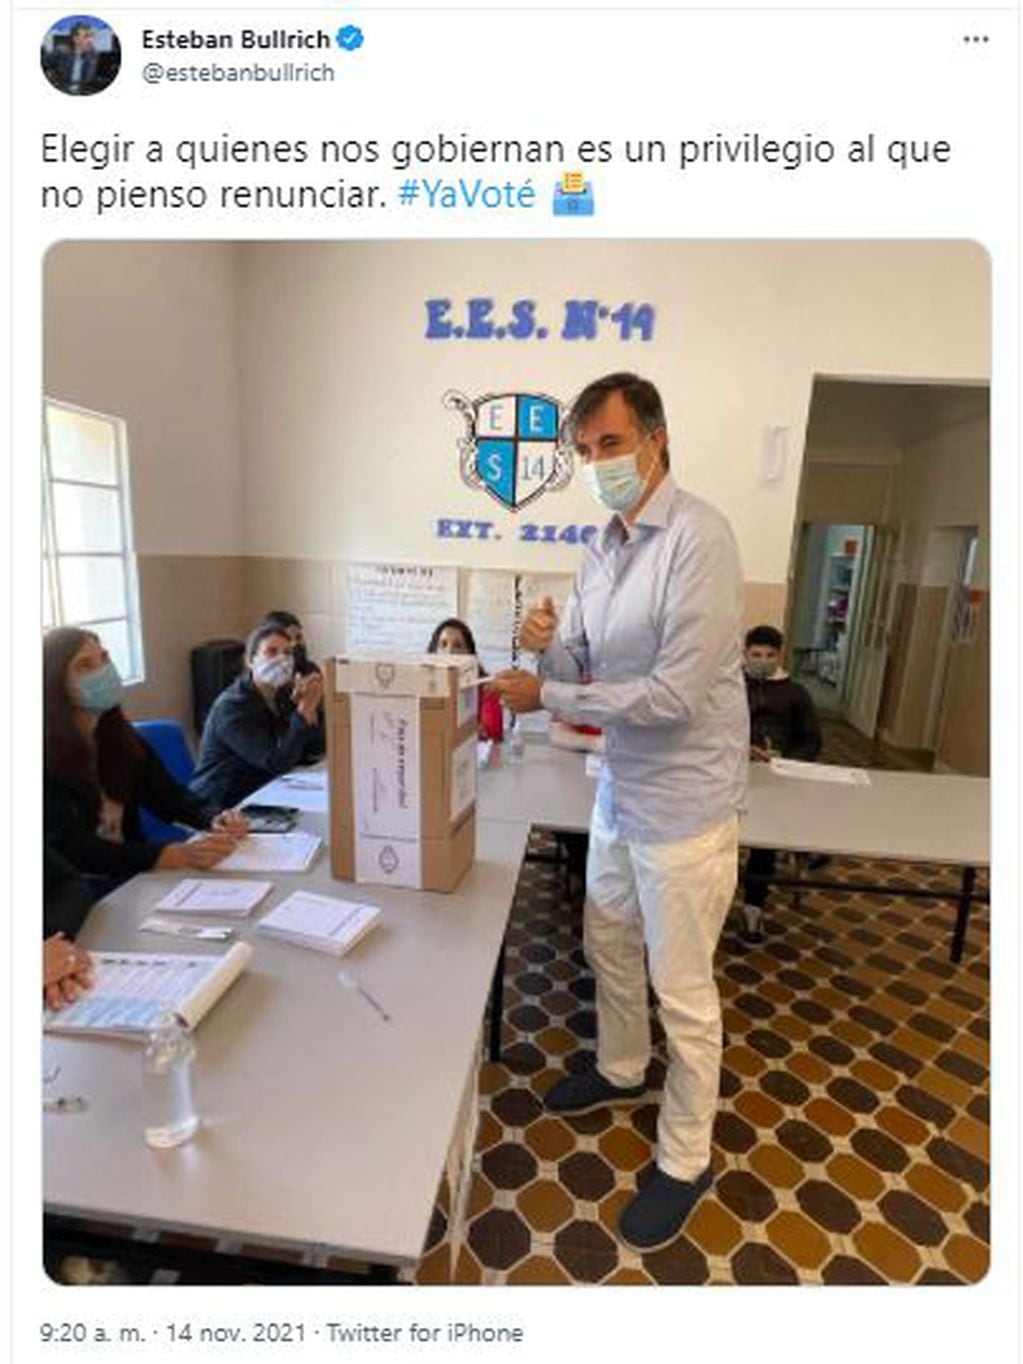 El senador nacional Esteban Bullrich, quien fue diagnosticado con ELA hace 14 meses, emitió su voto en la ciudad bonaerense de Junín.